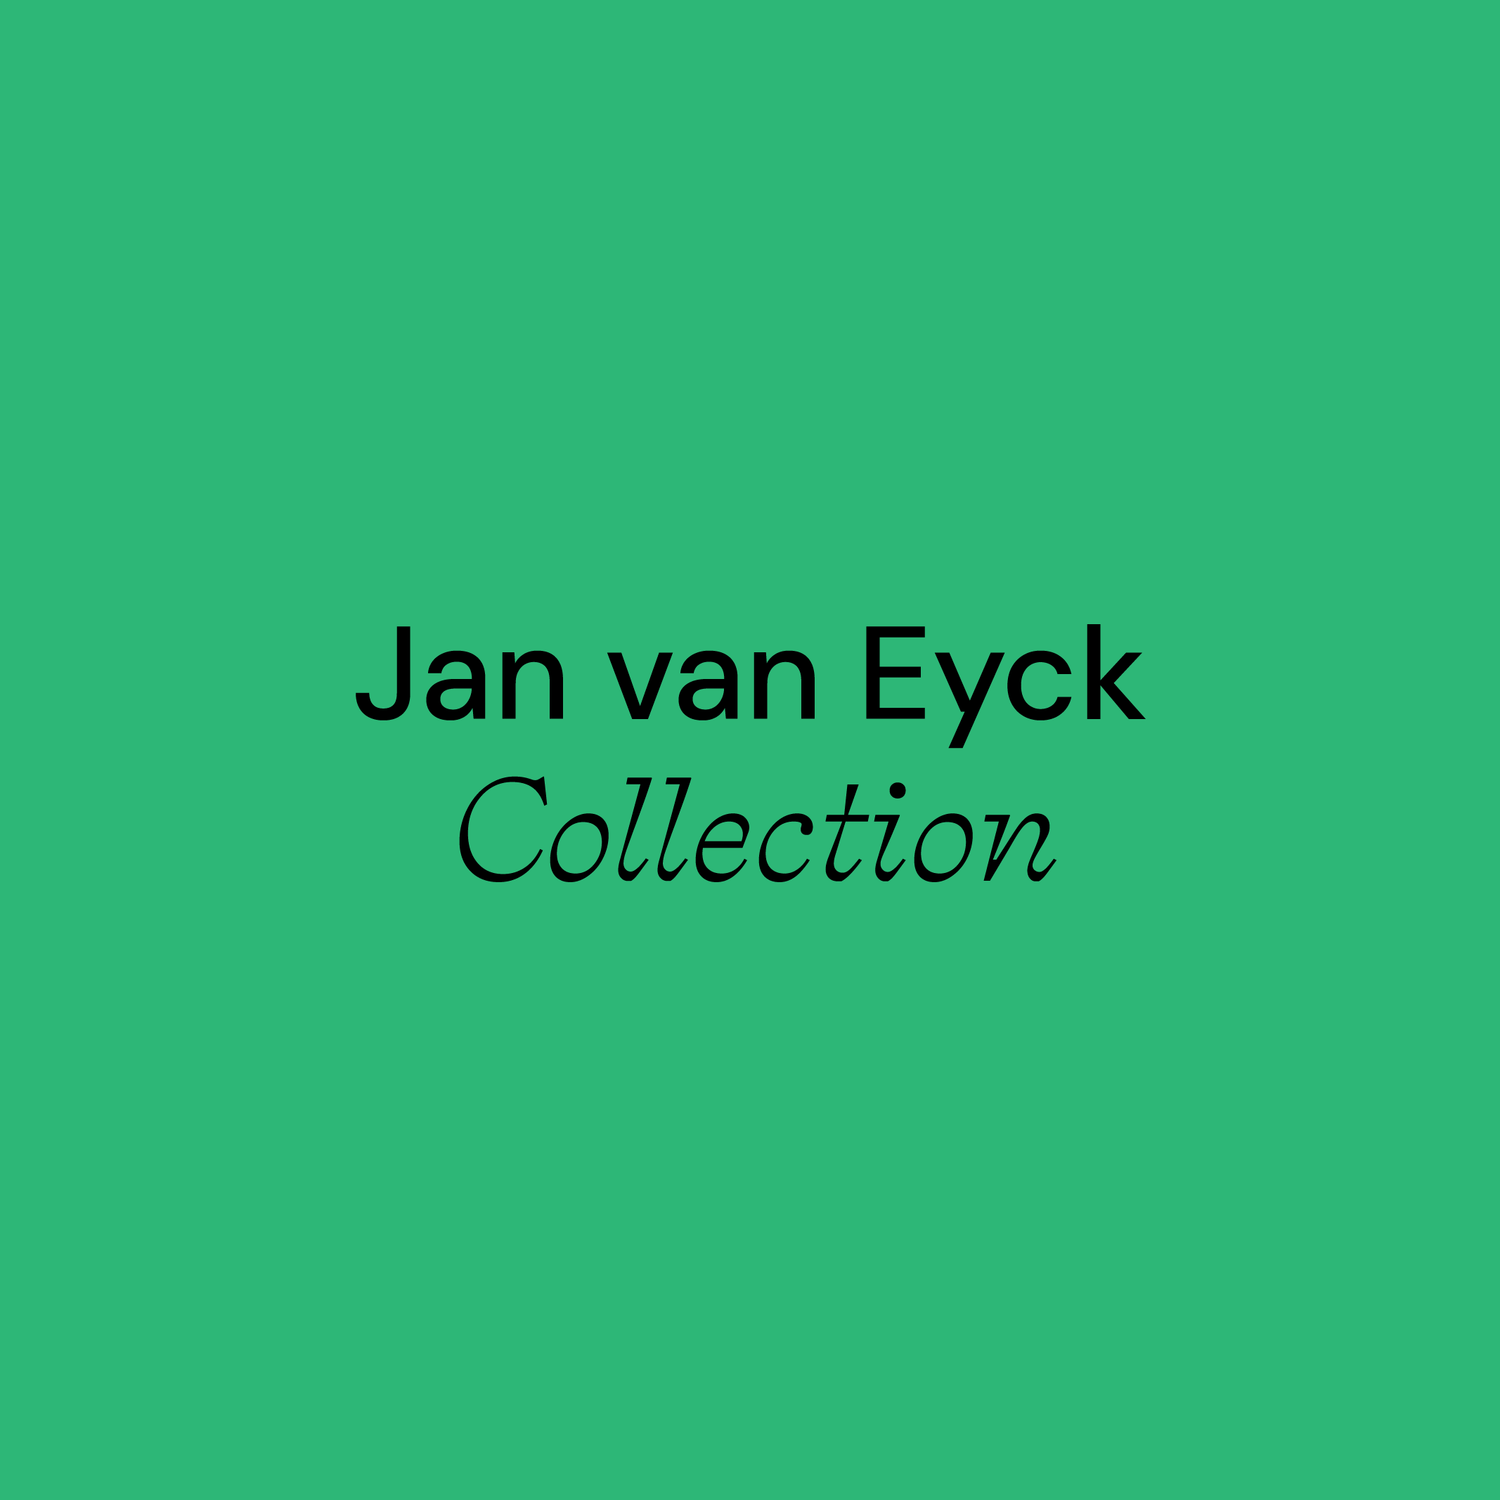 Jan van Eyck Collection